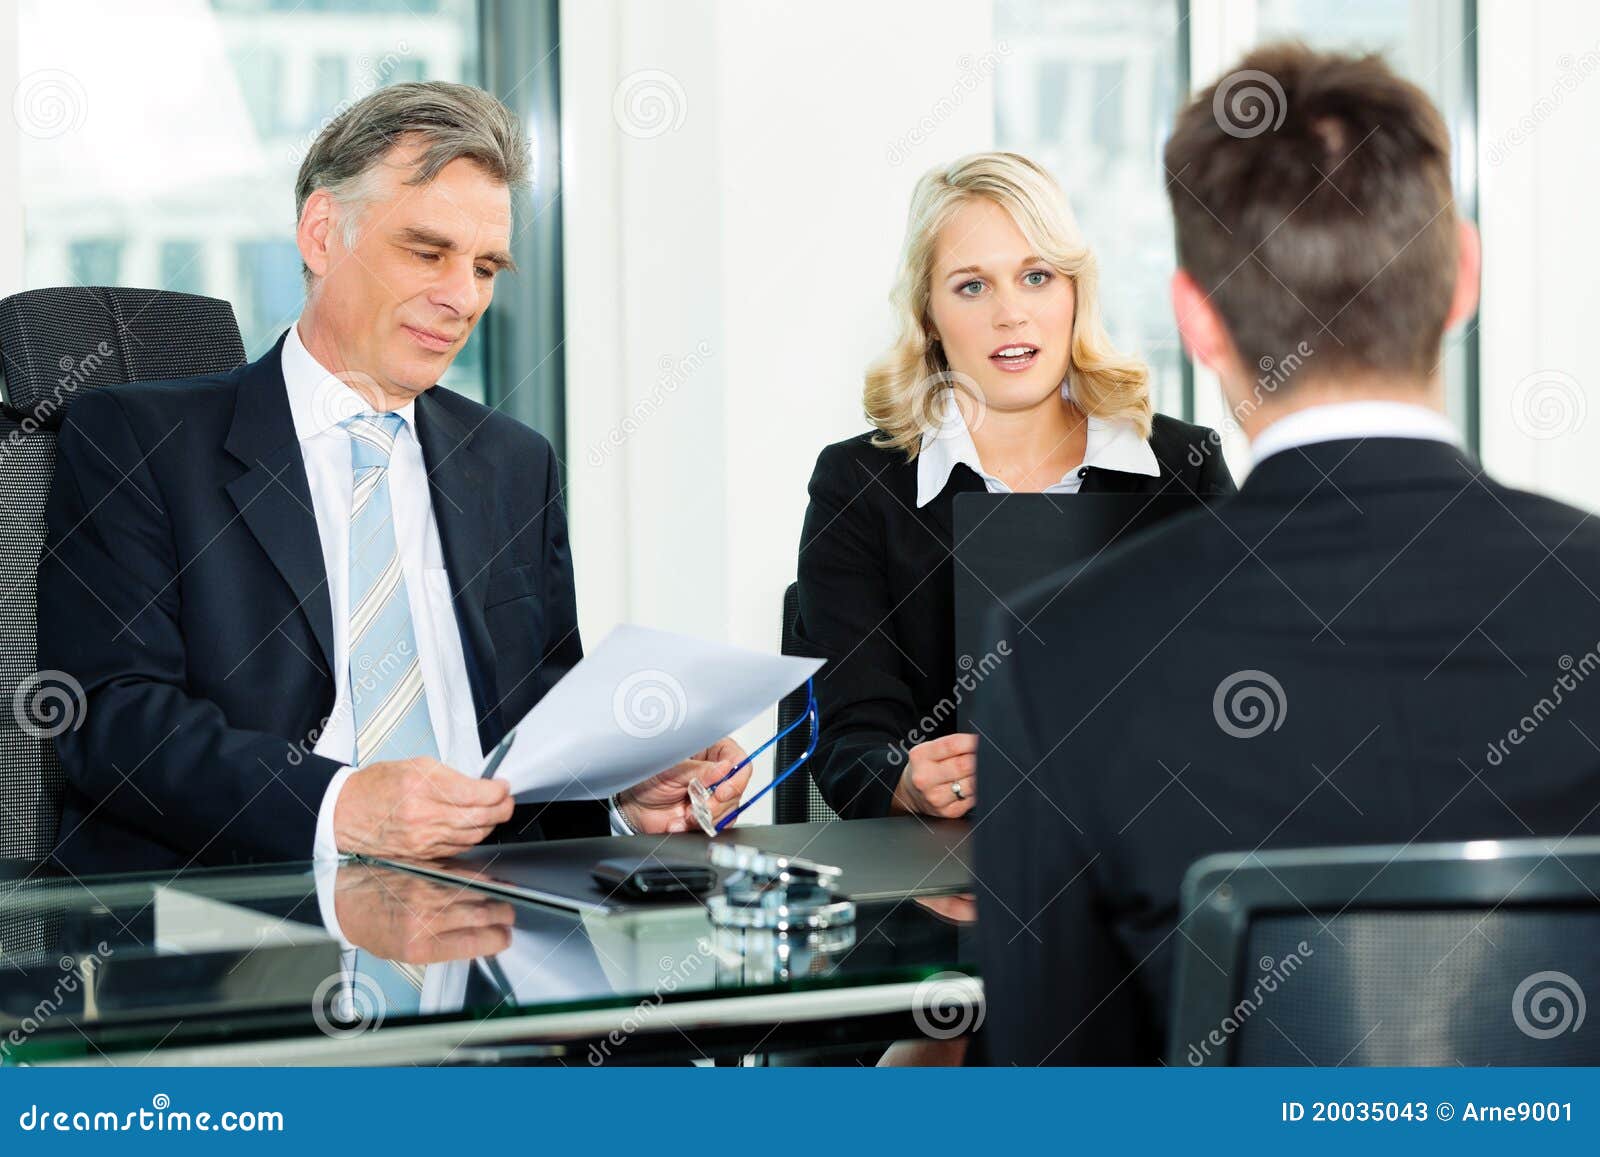 business - job interview